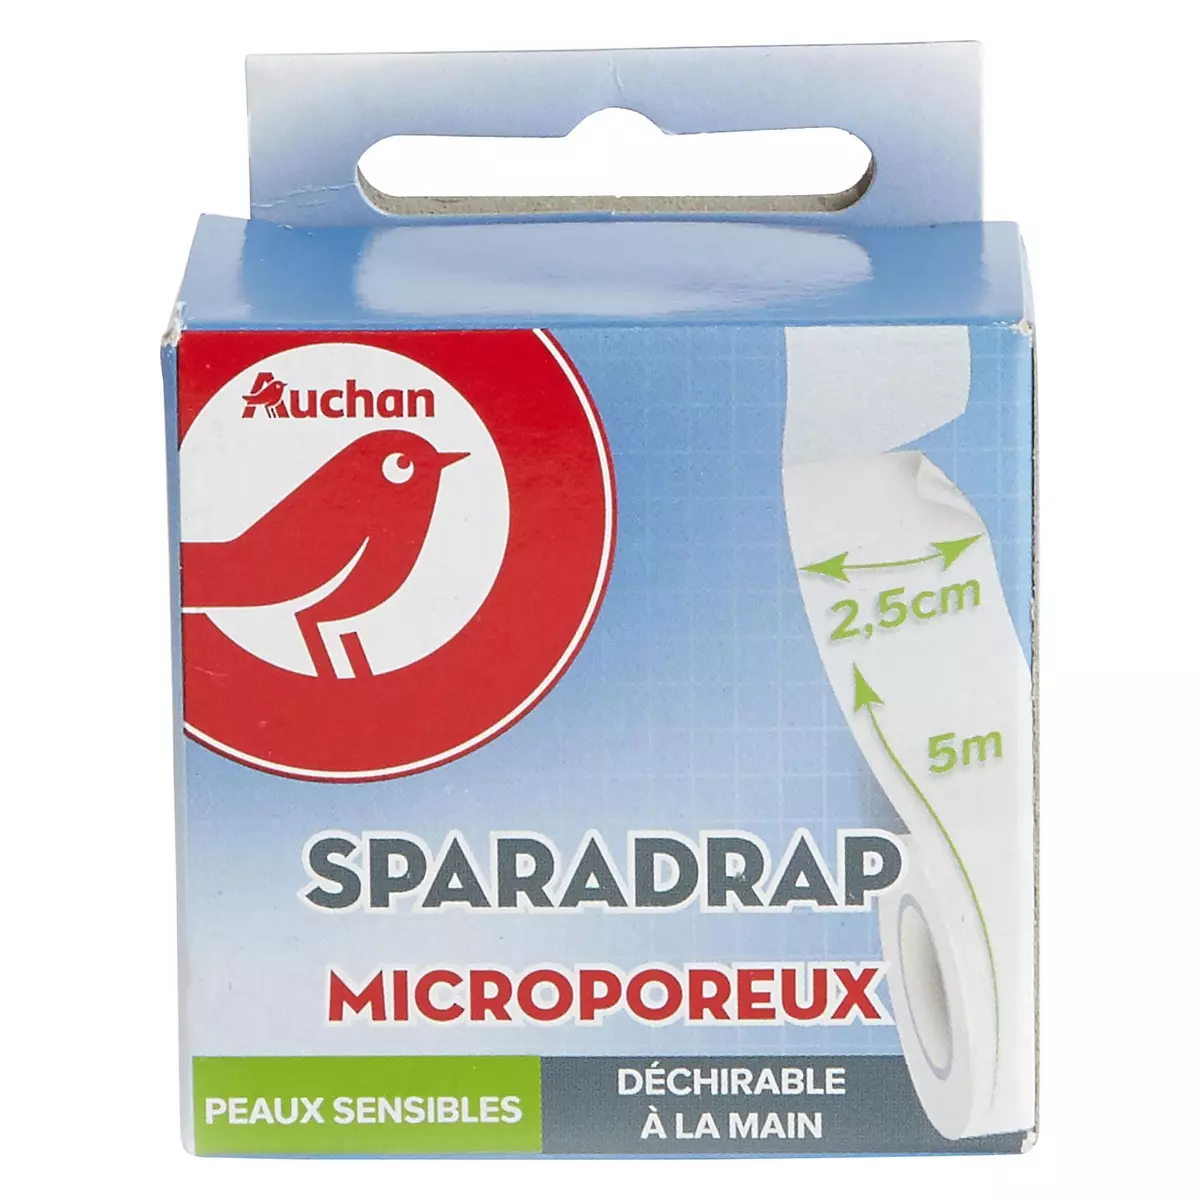 AUCHAN Sparadrap microporeux peaux sensibles 5mx2.5cm 1 rouleau